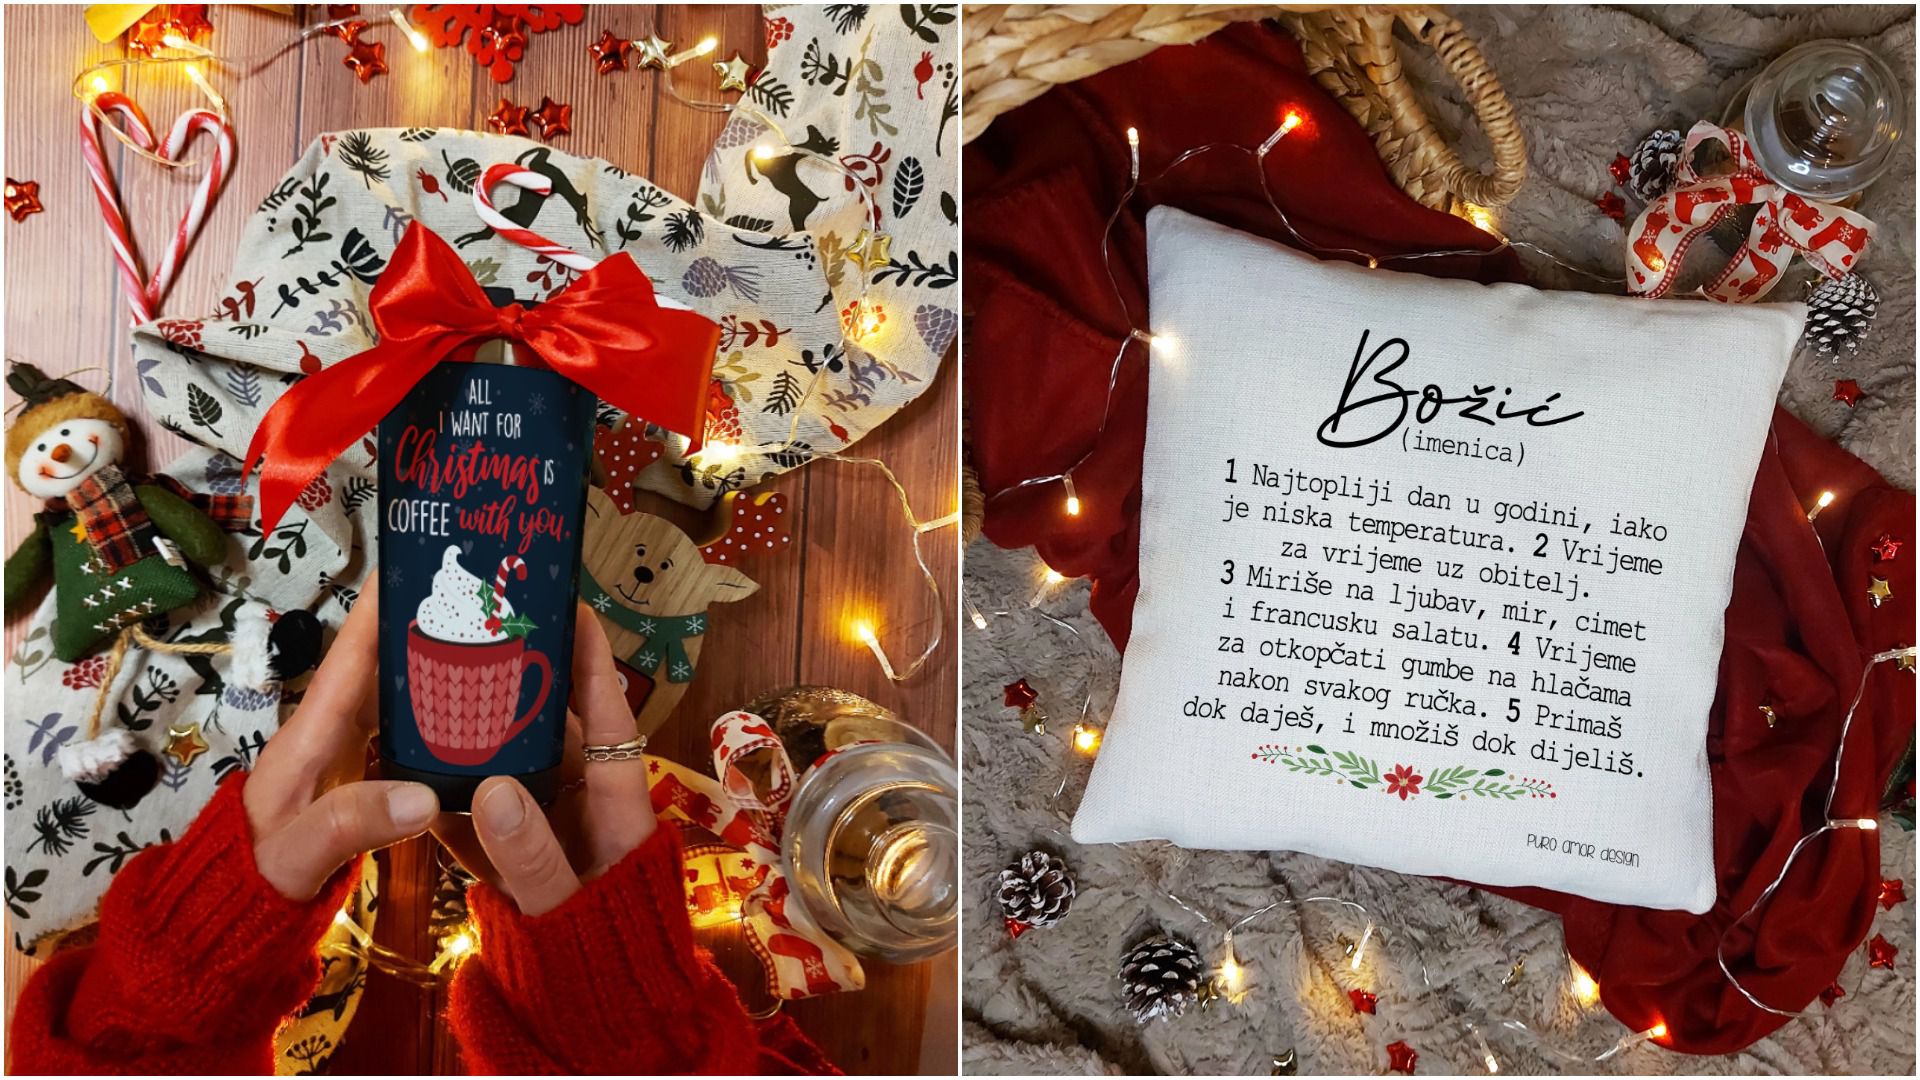 U božićnoj kolekciji hrvatskog brenda Puro Amor pronašli smo savršene ideje za pod bor